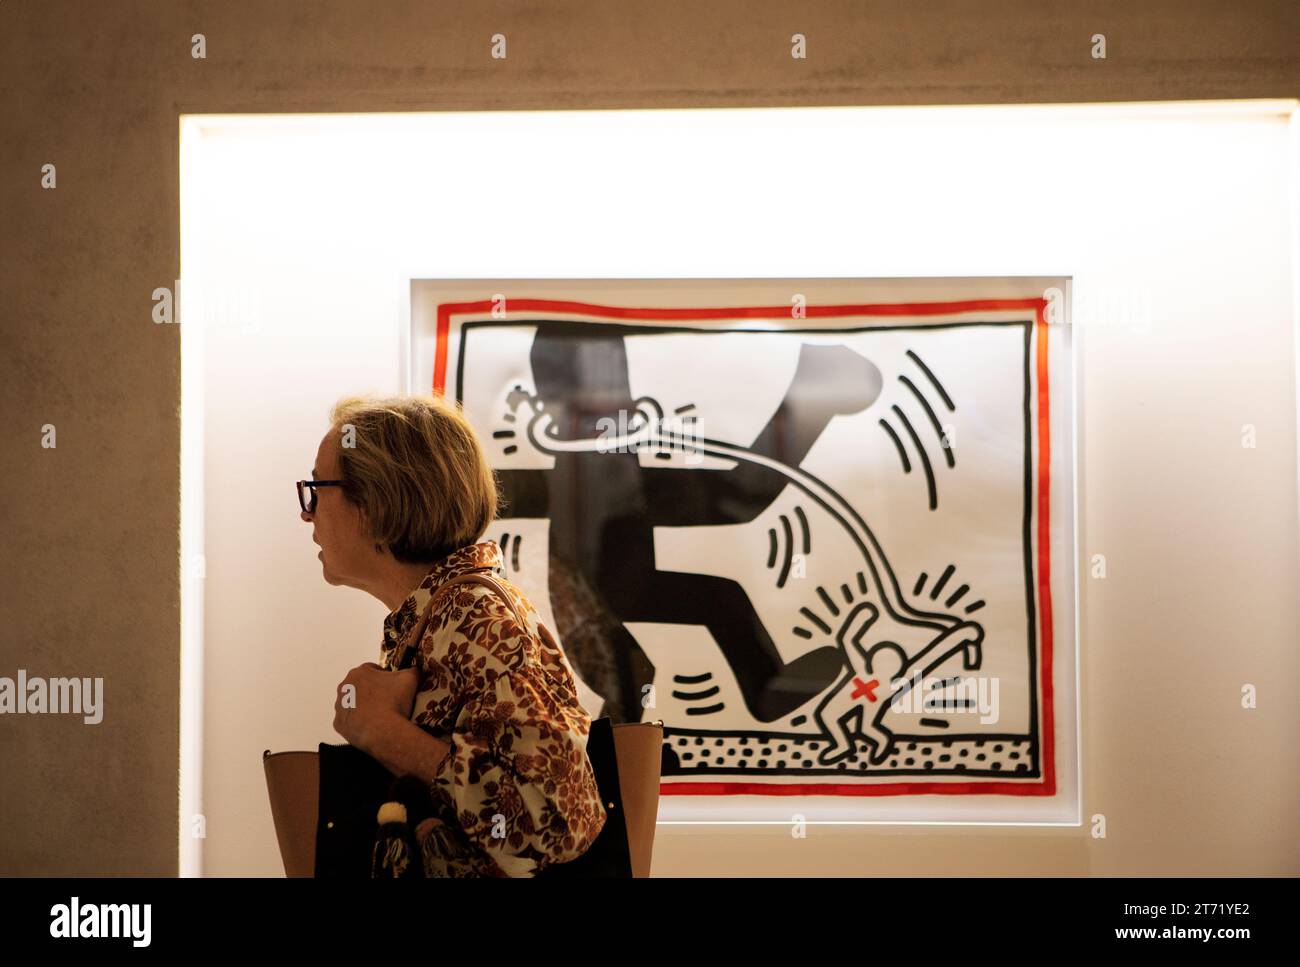 Ausstellung von Kunstwerken des Künstlers Keith Haring Painter, Parma Italien Stockfoto